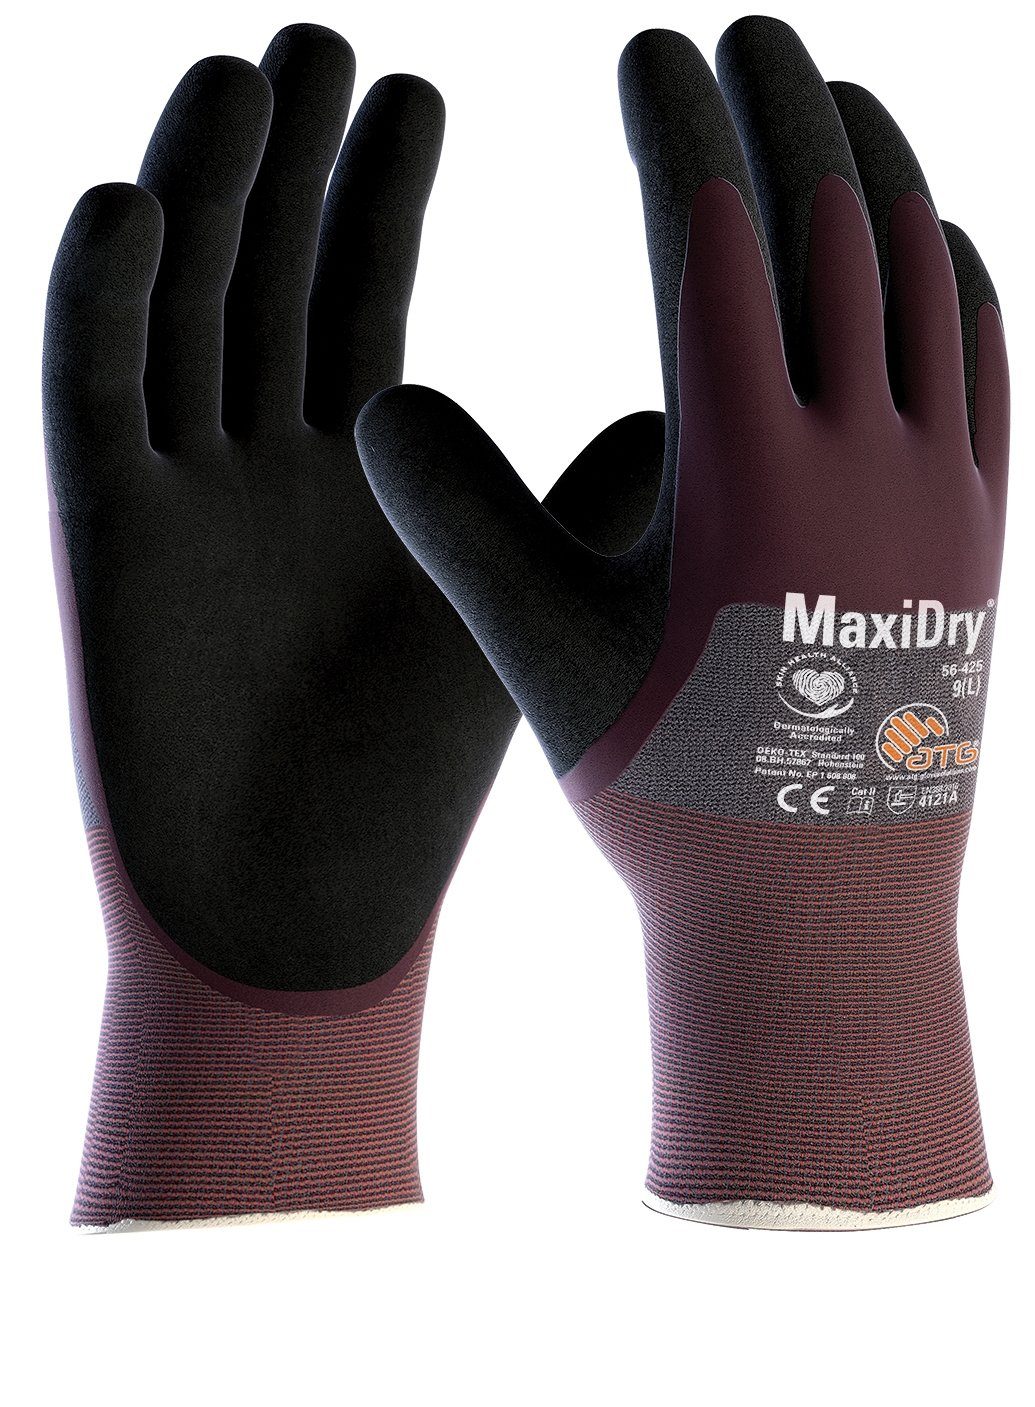 ATG Nitril-Handschuhe "MaxiDry®", 3/4 beschichtet (56-425) 12 Paar | Handschuhe